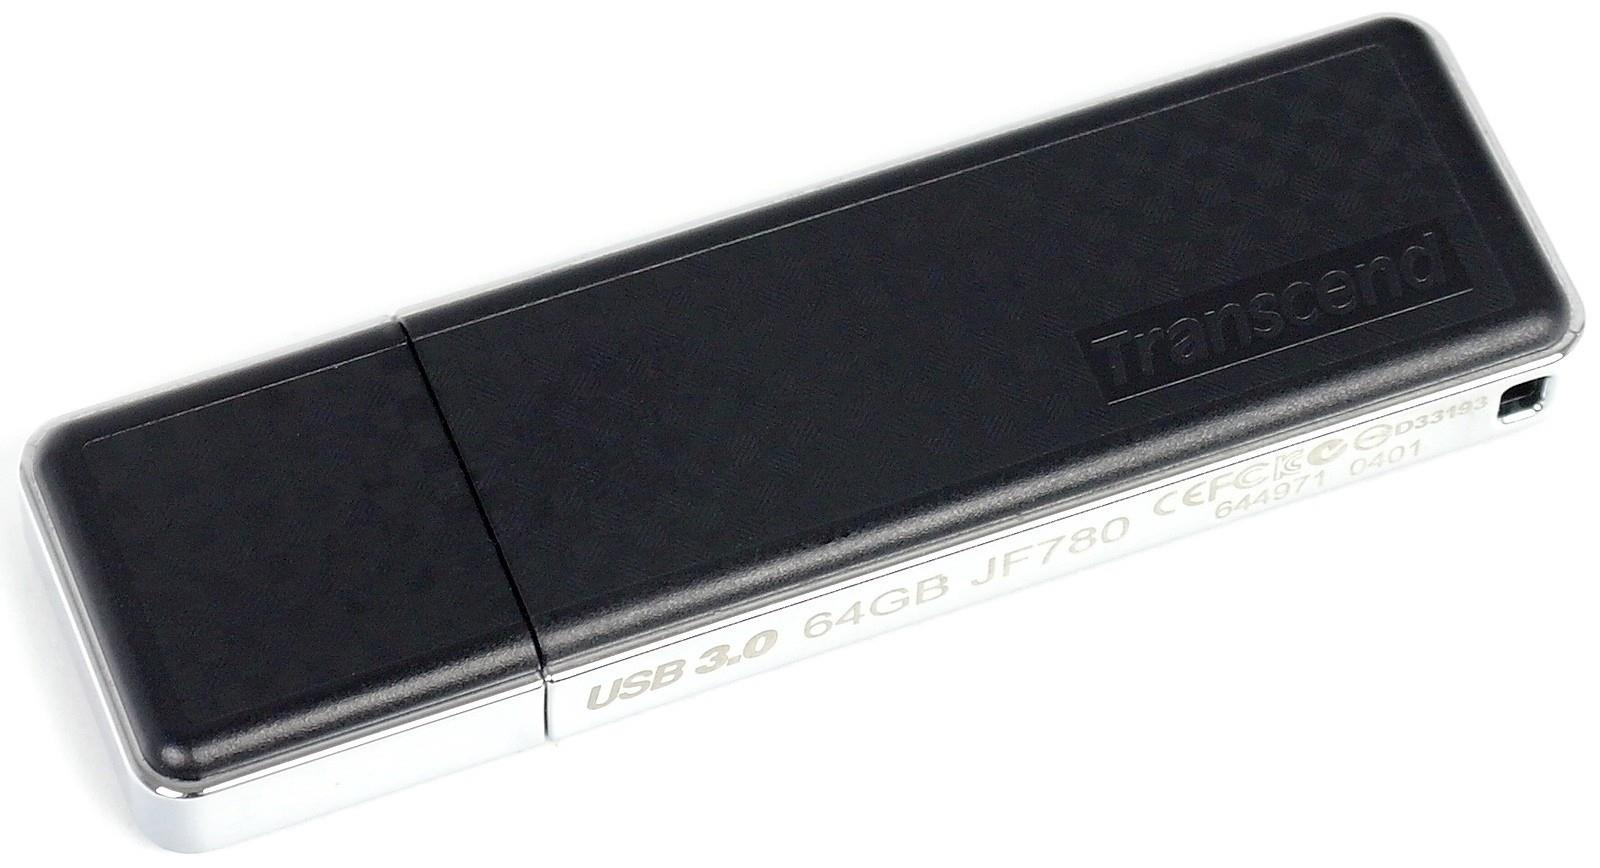 Transcend JetFlash 780 - очень быстрая флешка с USB 3.0